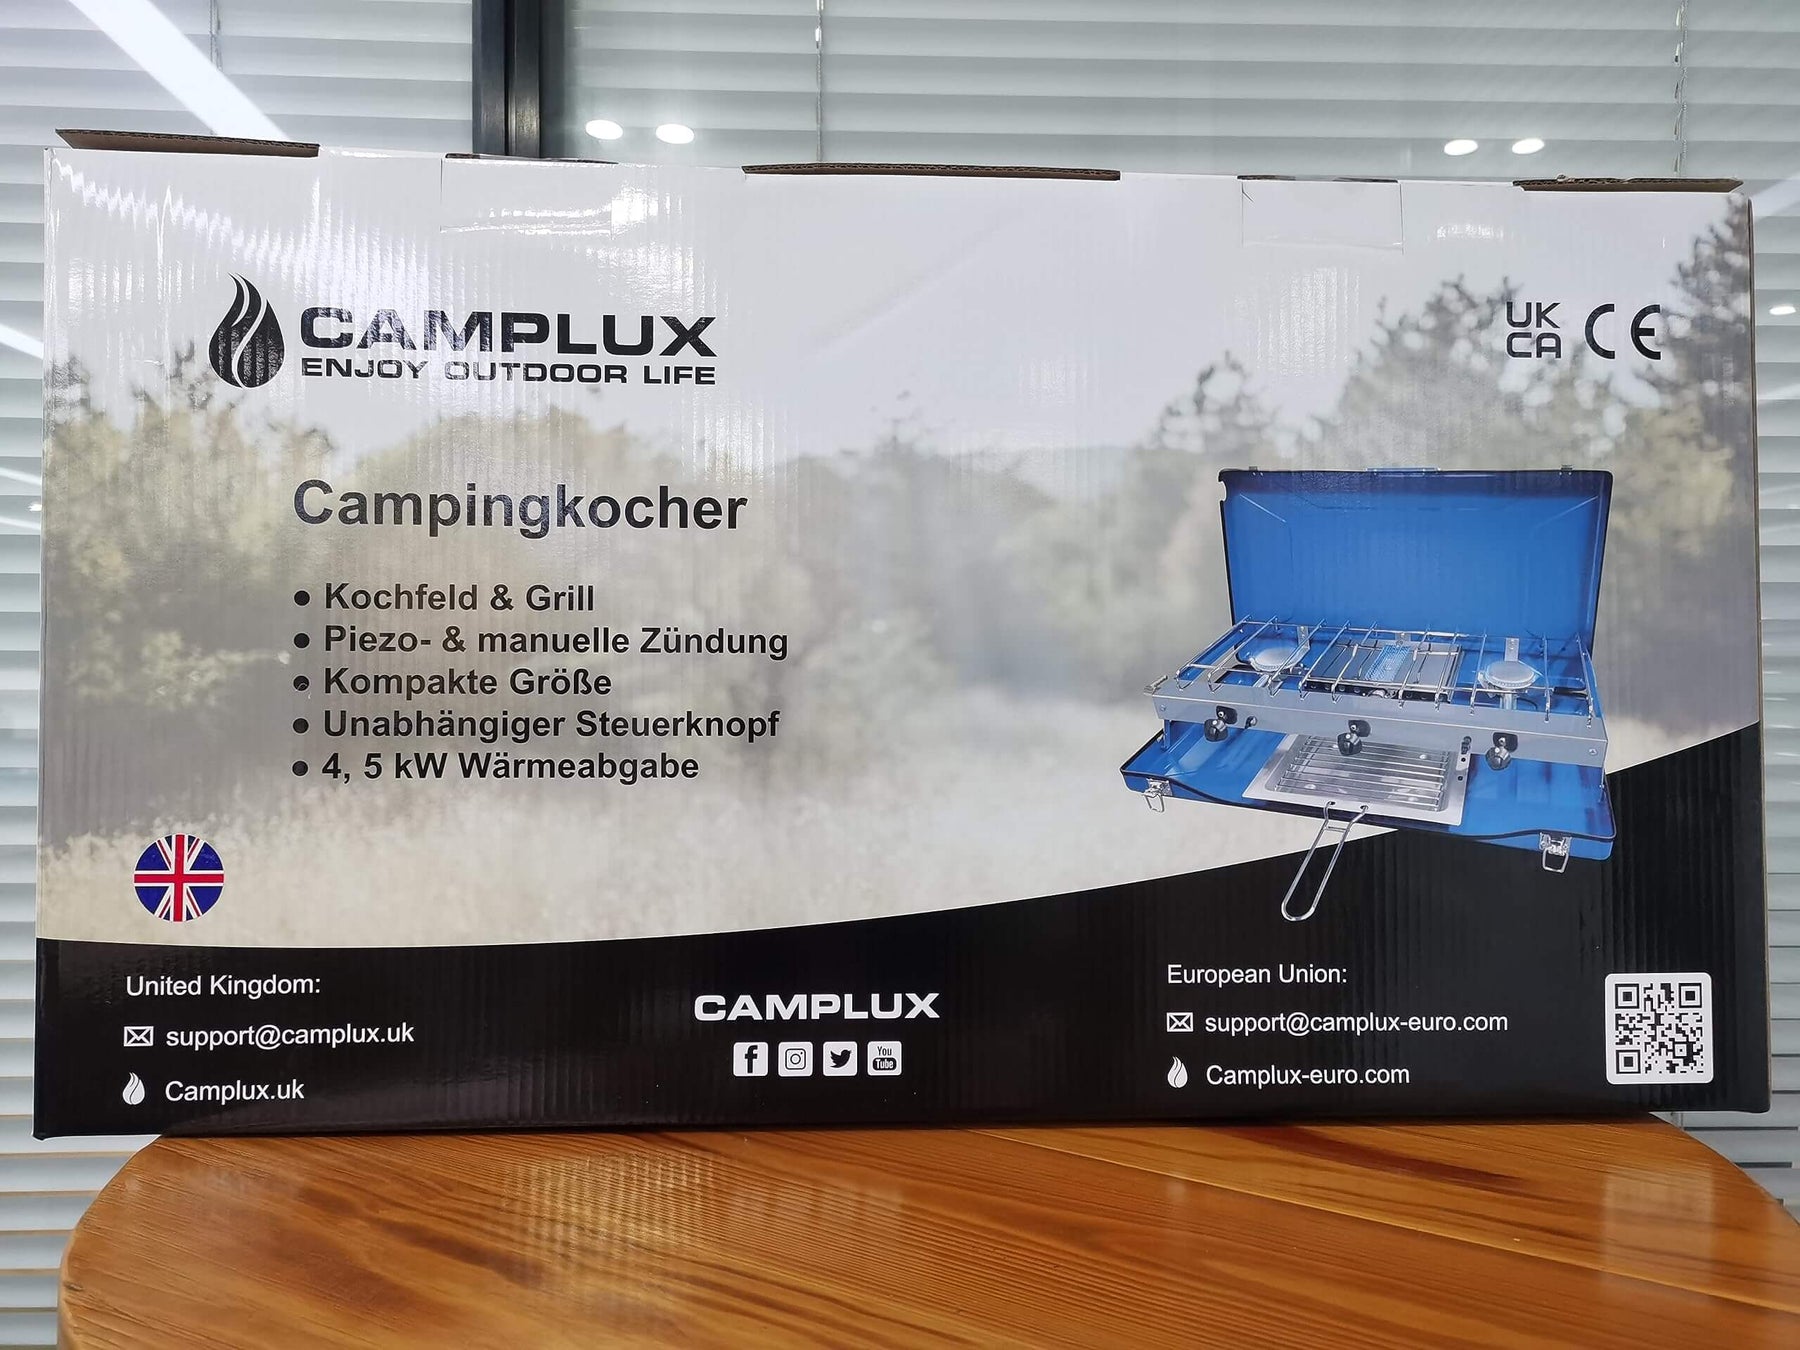 Camplux JK-5330 Campingkocher, 3 Brenner mit Deckel, Camping-Gaskocher, 4,5 kW, Butan/Propan, 30/37 mbar, geeignet 